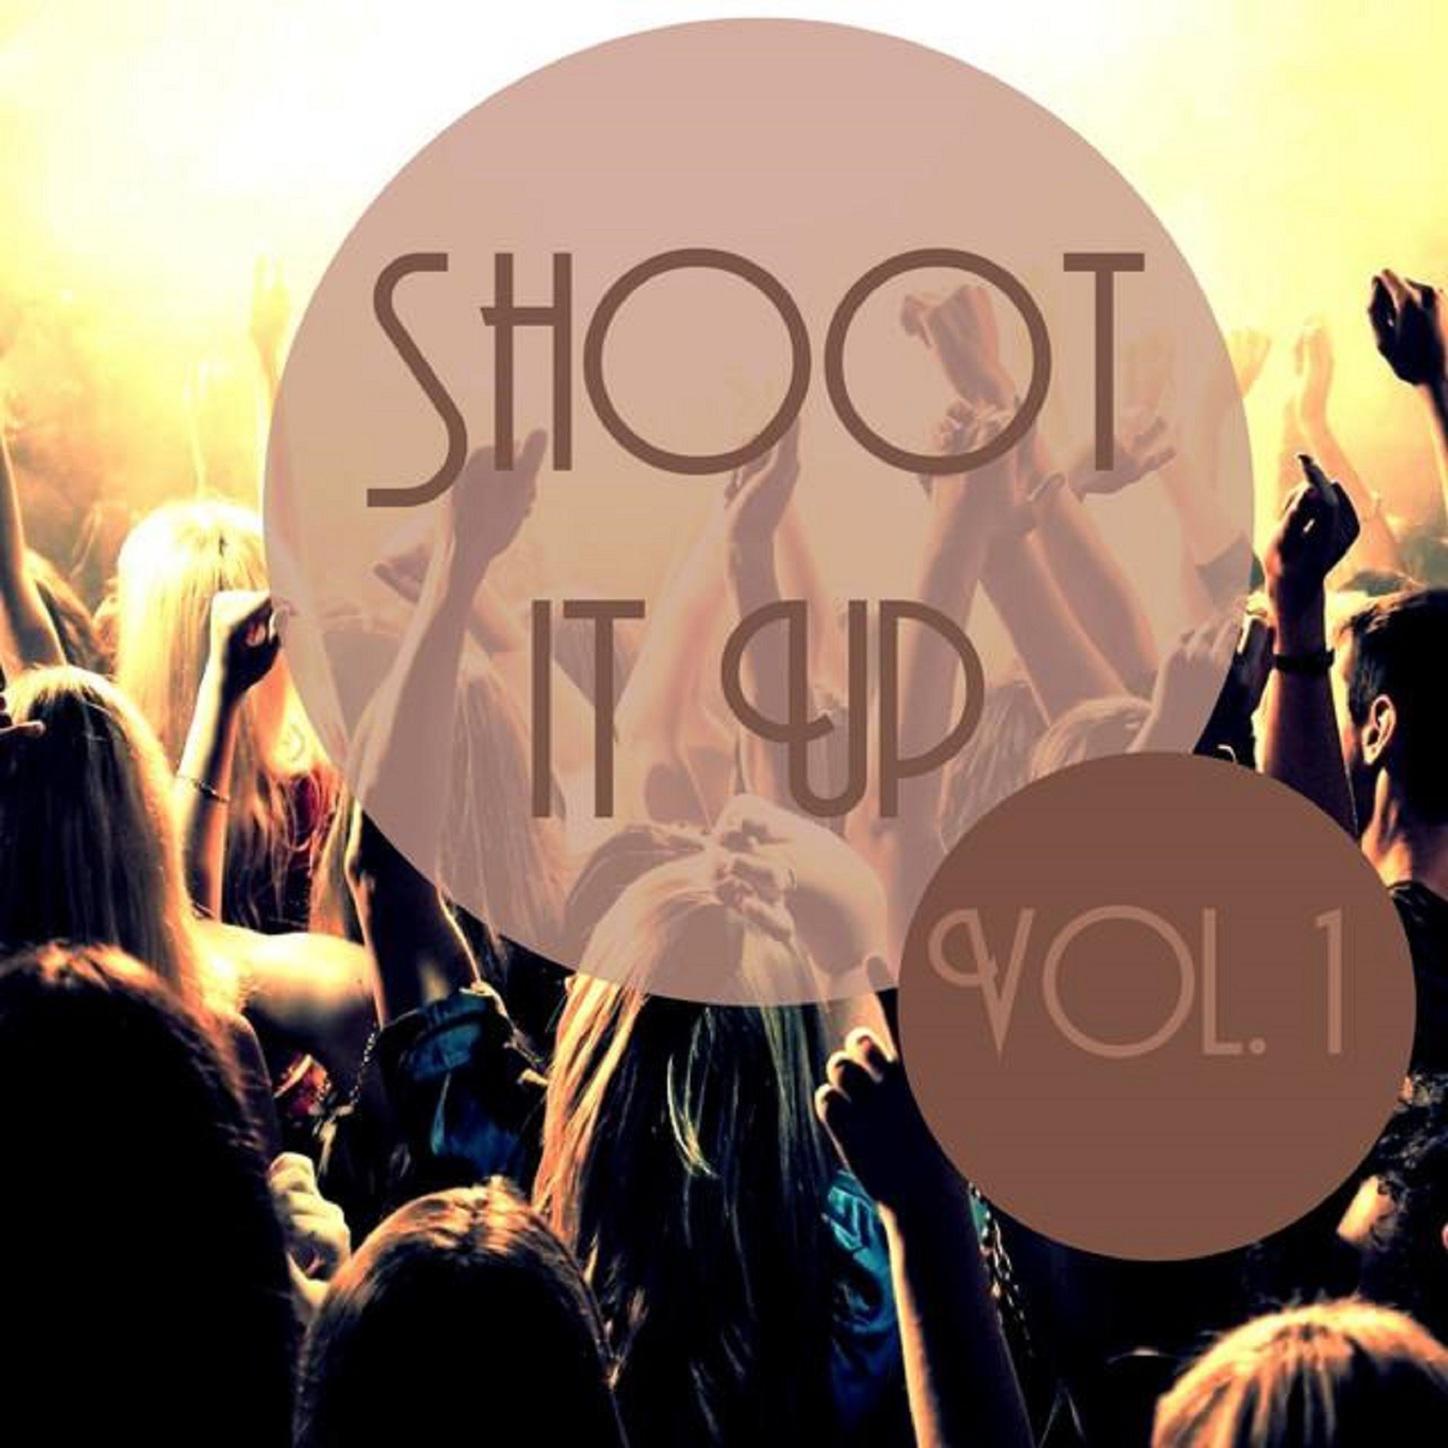 Shoot It Up Vol, 1